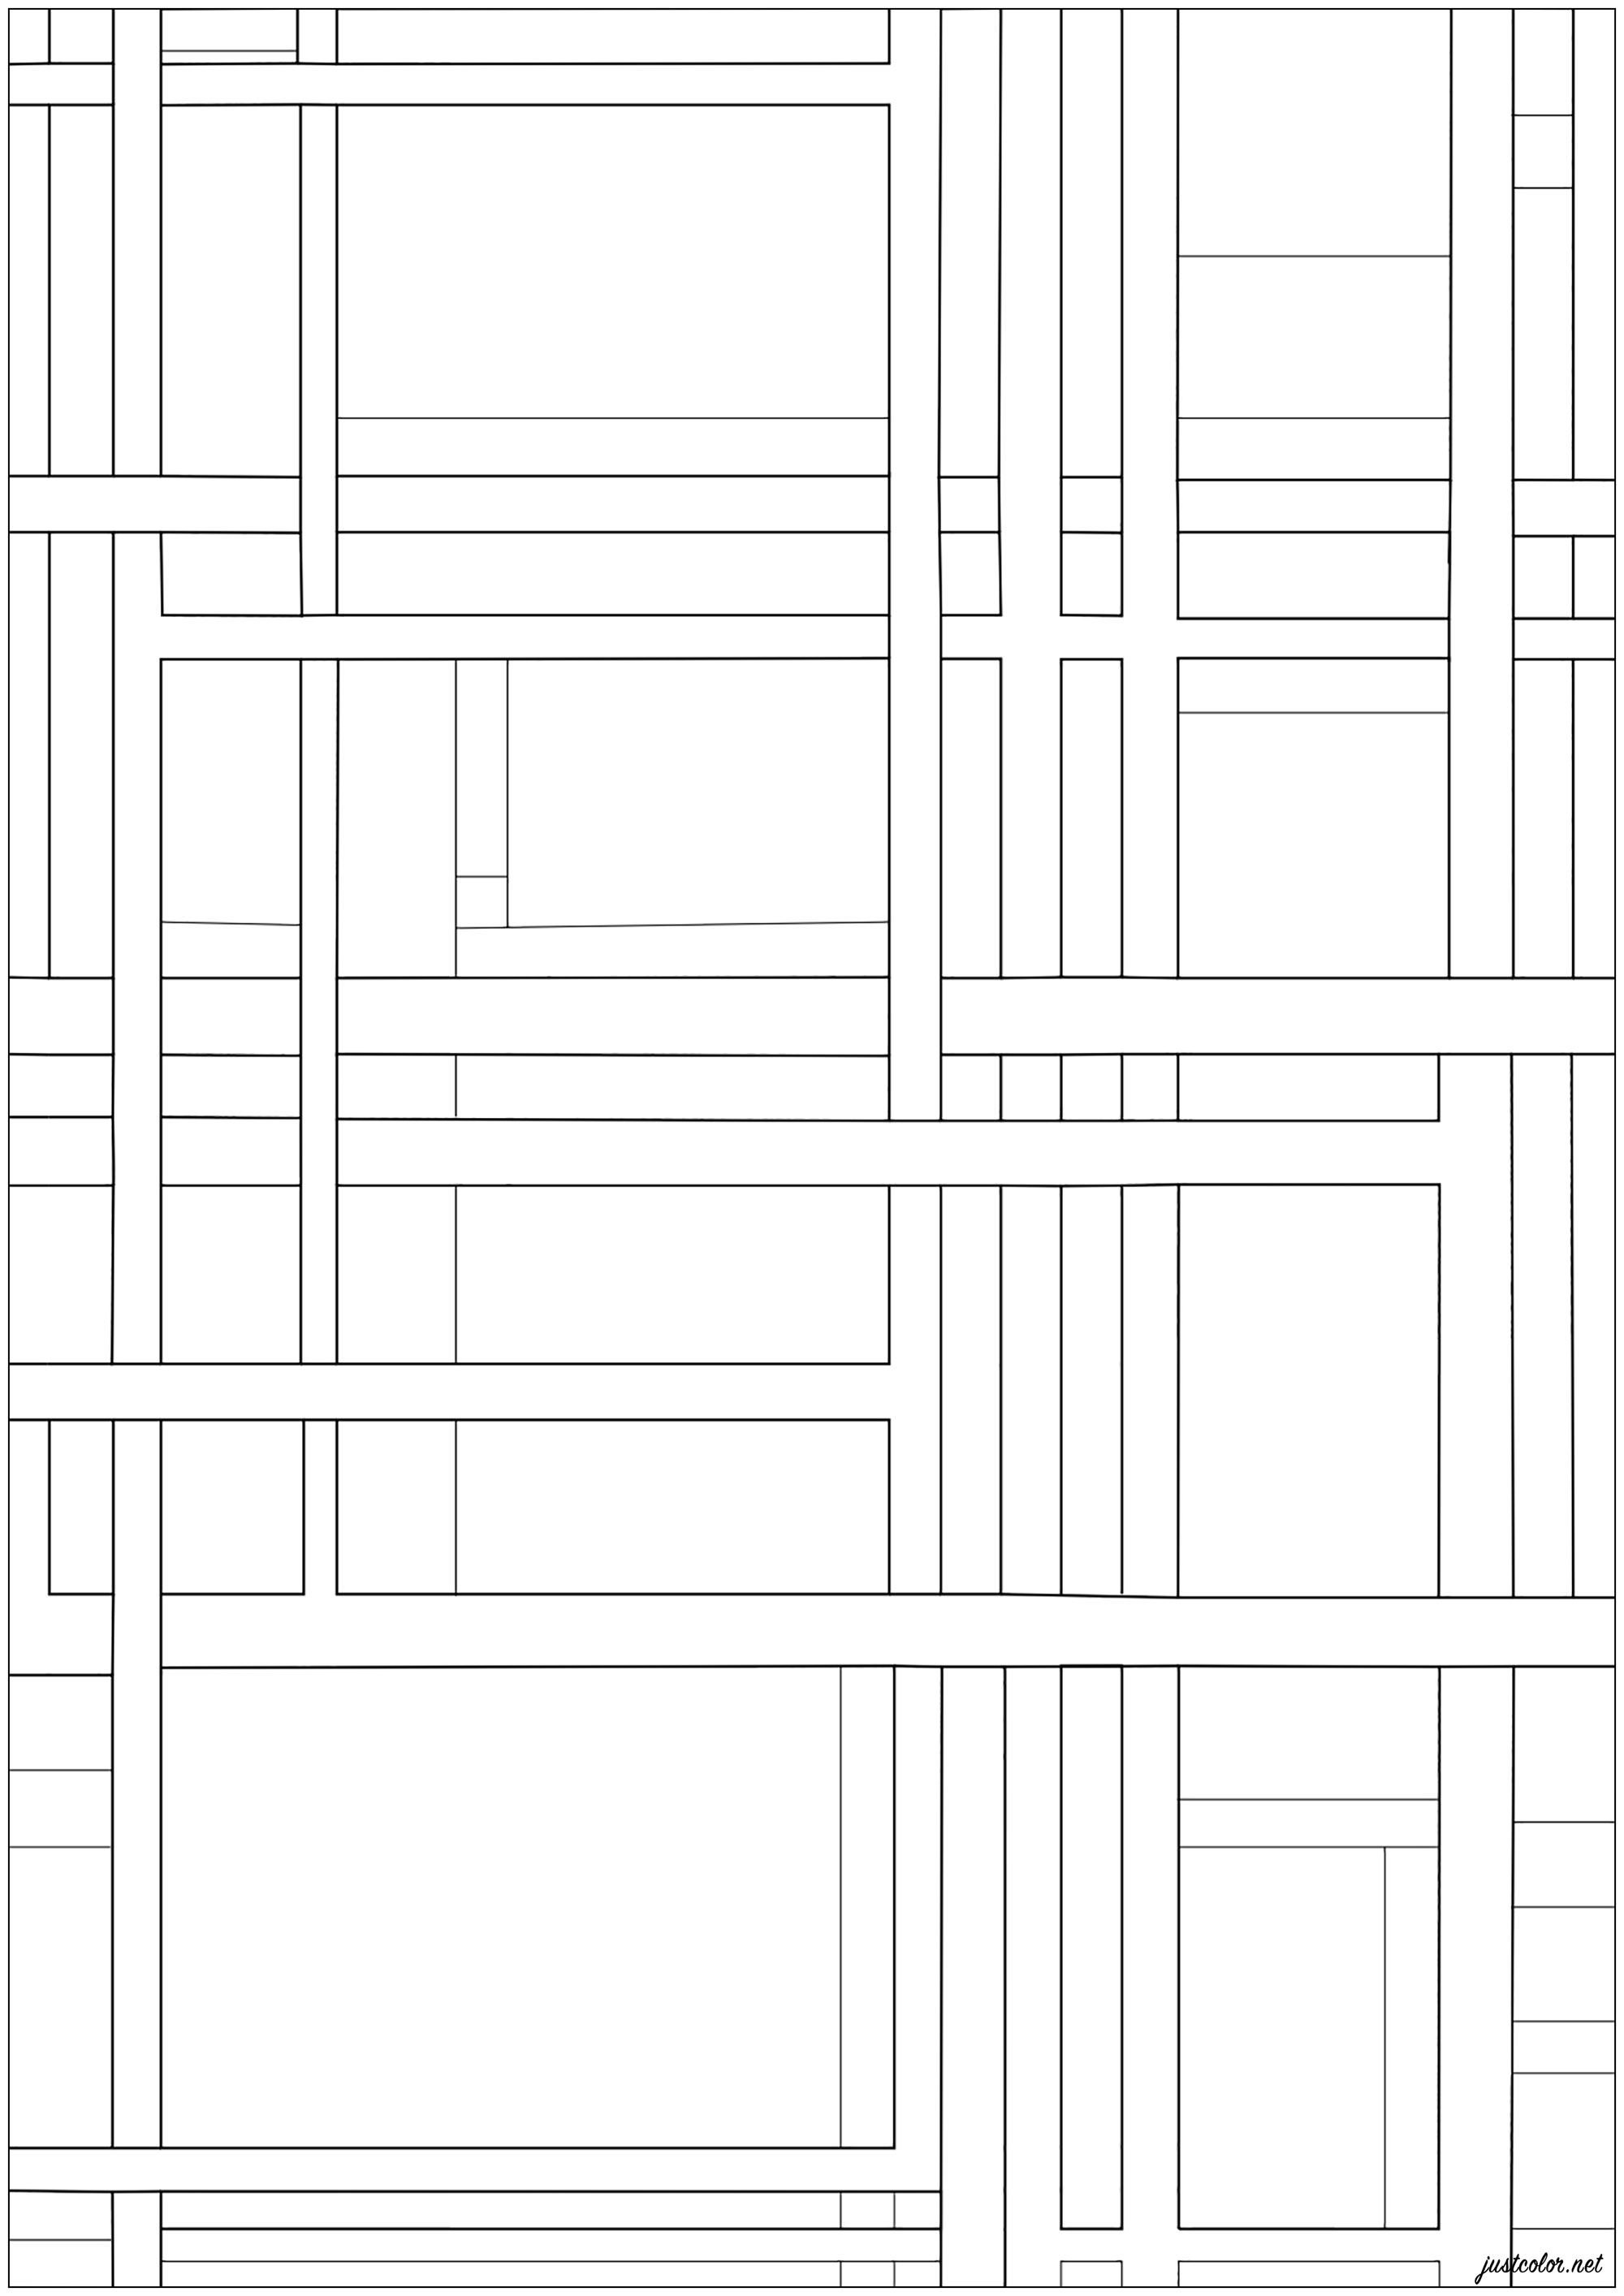 Coloriage créé à partir de la peinture d'Ilya Bolotowsky 'Ville Rectangle' (1948). La composition ordonnée et quadrillée des peintures ce cet artiste est marquée par des lignes noires et blanches de différentes largeurs et des zones rectangulaires de couleurs primaires non modulées. Comme Mondrian, Bolotowsky s'est efforcé d'établir un équilibre entre horizontales et verticales qui soit à la fois harmonieux et dynamique, Artiste : Ezekhiel L